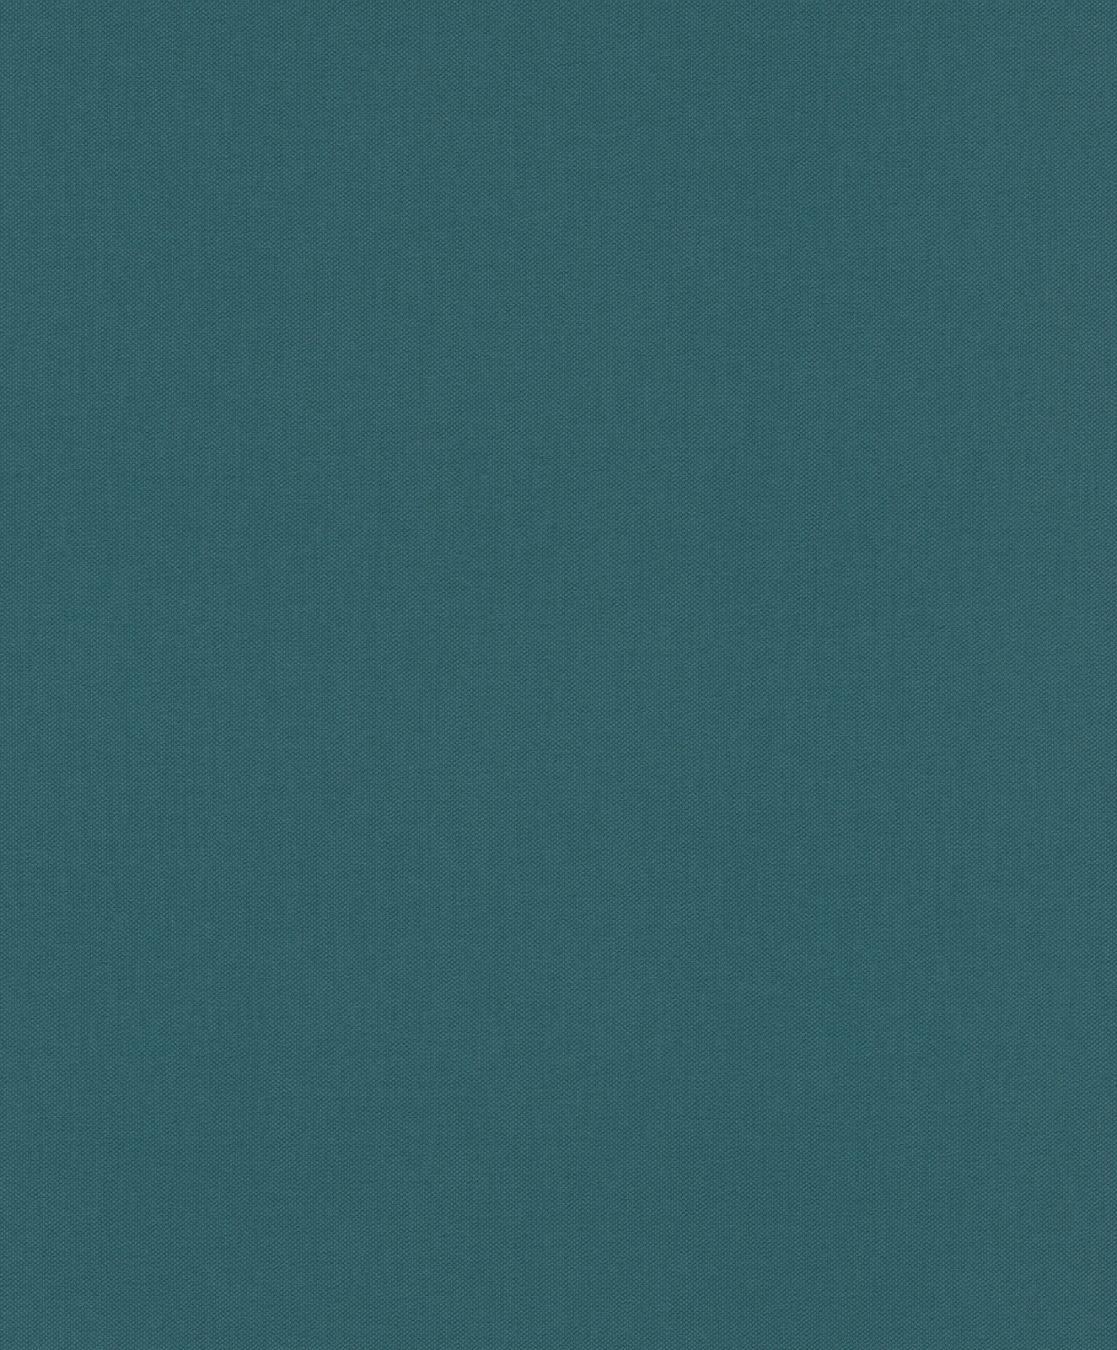 Цвет темный зеленовато синий. Плитка Vela Indigo Azori. Vela Indigo 33.3x33.3. Бирюзовый квадрат. Лазурно-серый цвет.